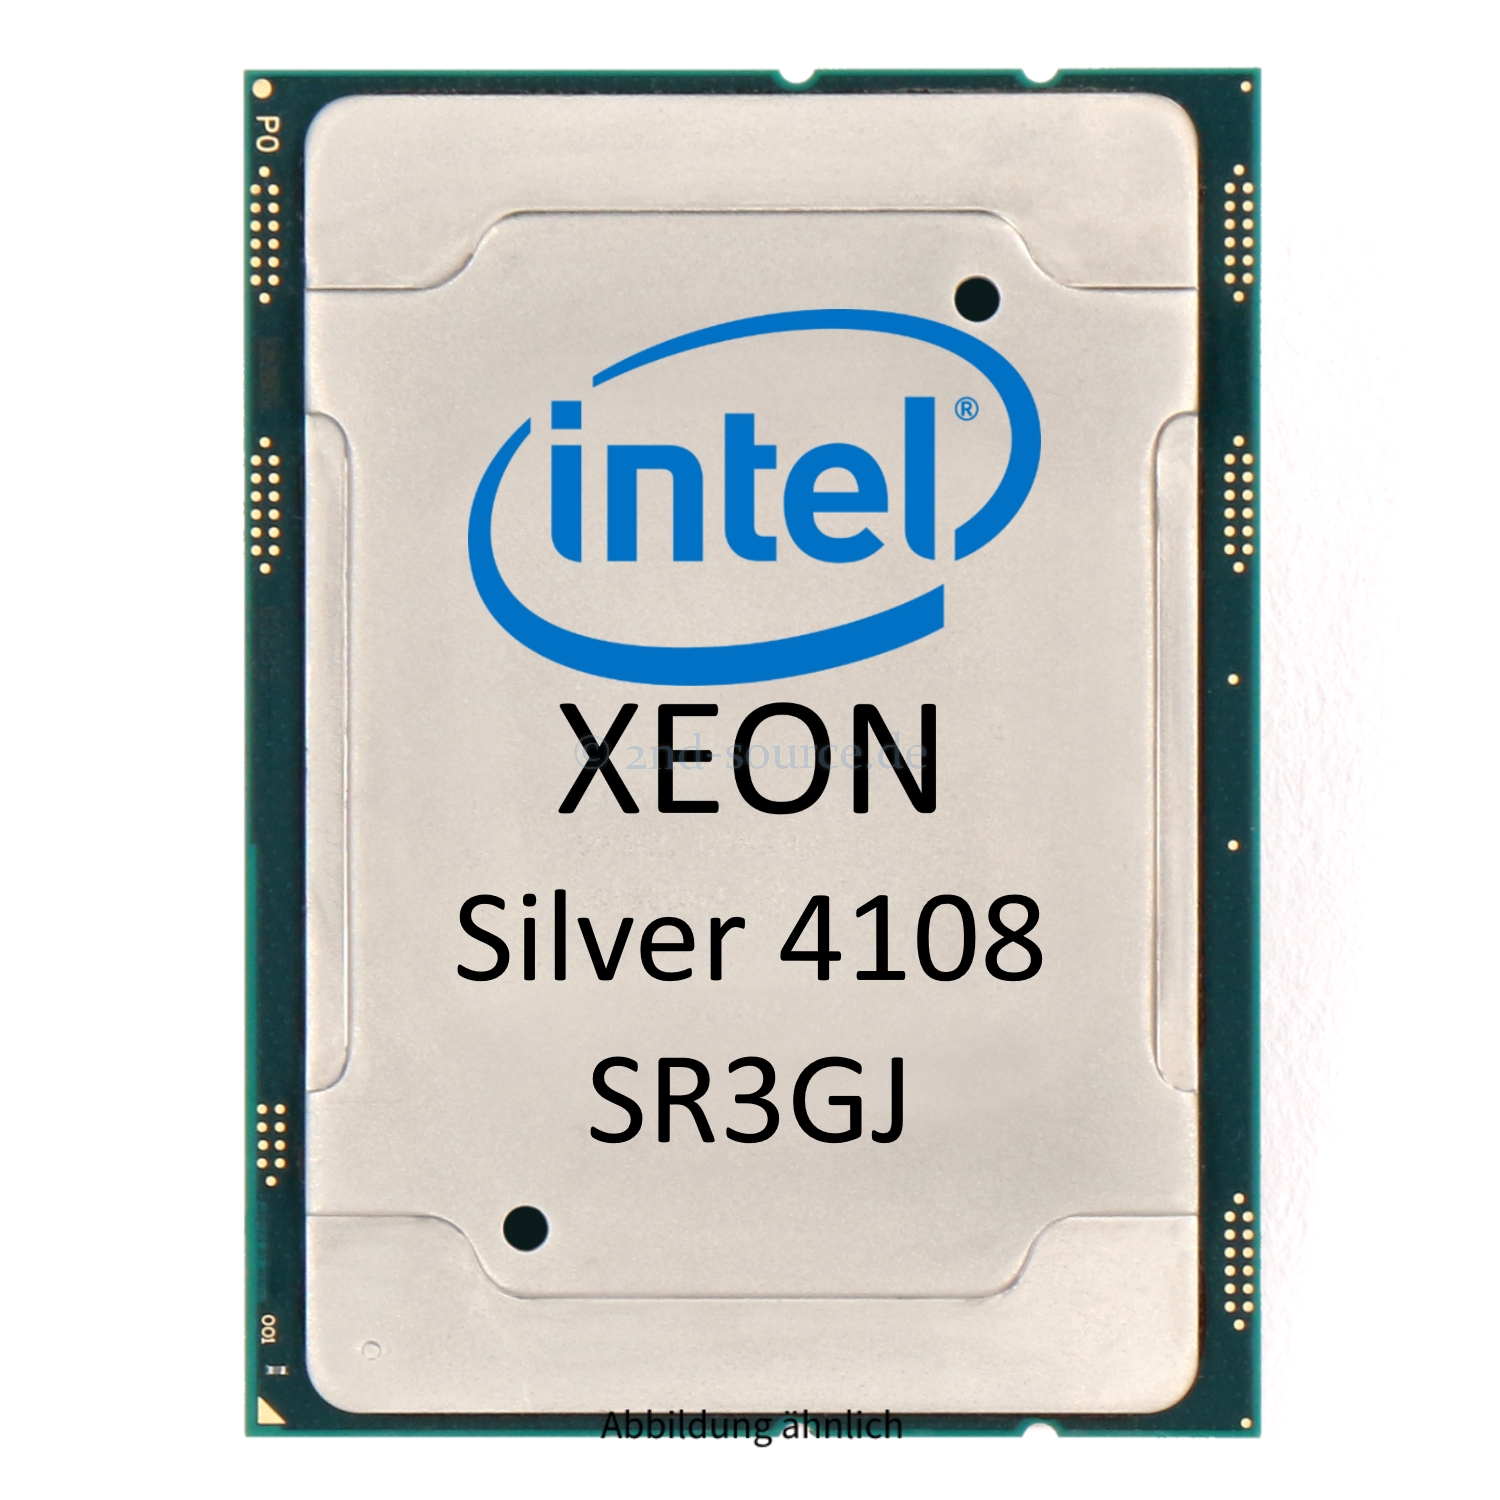 10x Intel Xeon Silver 4108 1.80GHz 11MB 8-Core CPU 85W SR3GJ CD8067303561500